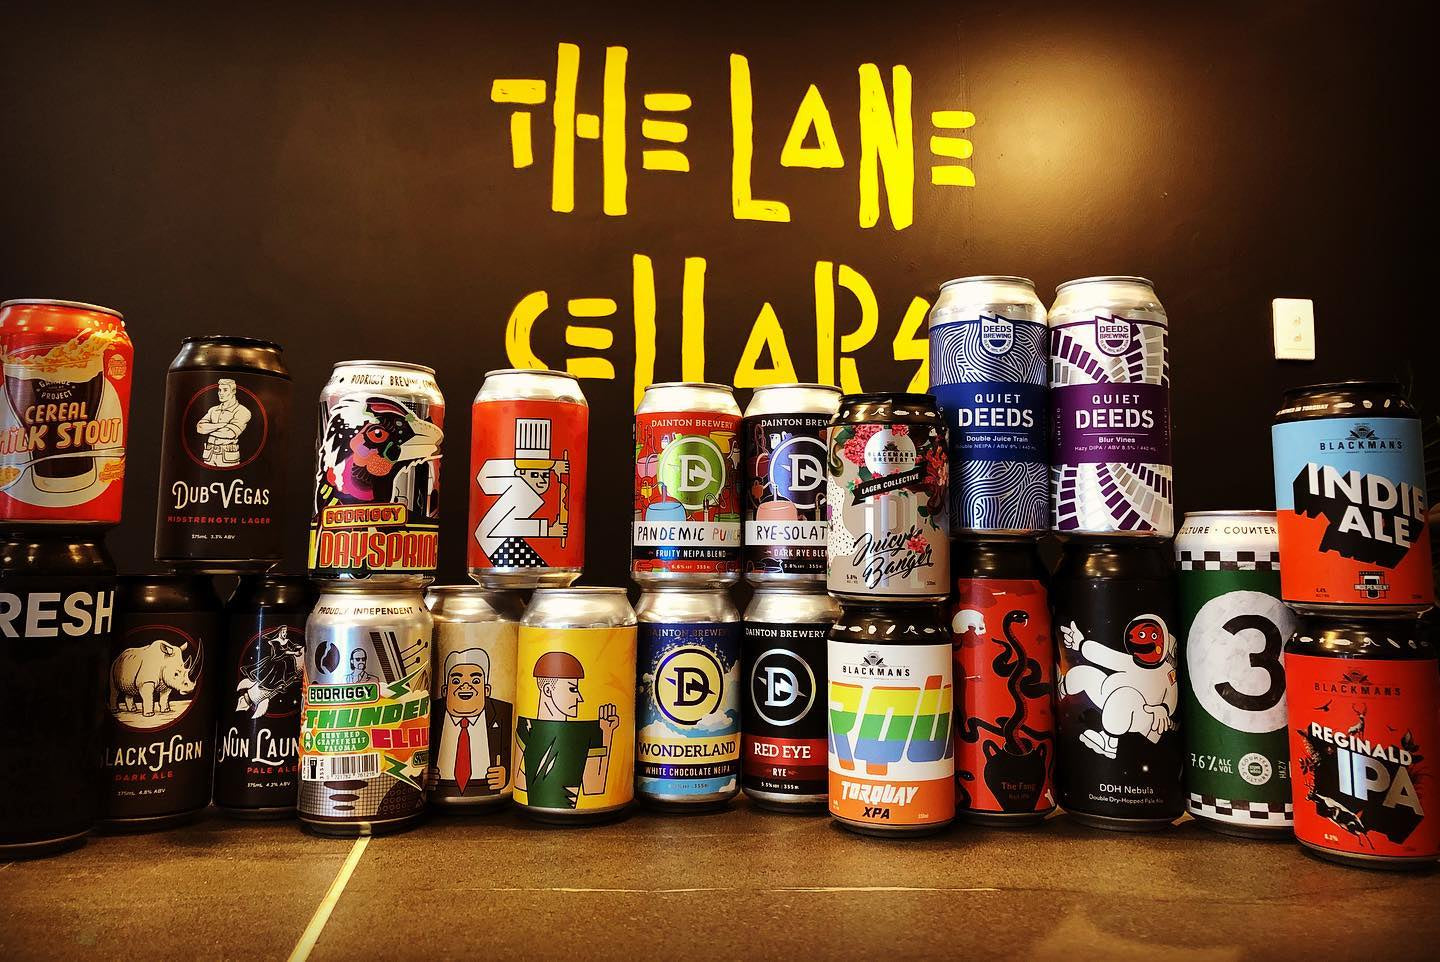 The Lane Beer Club